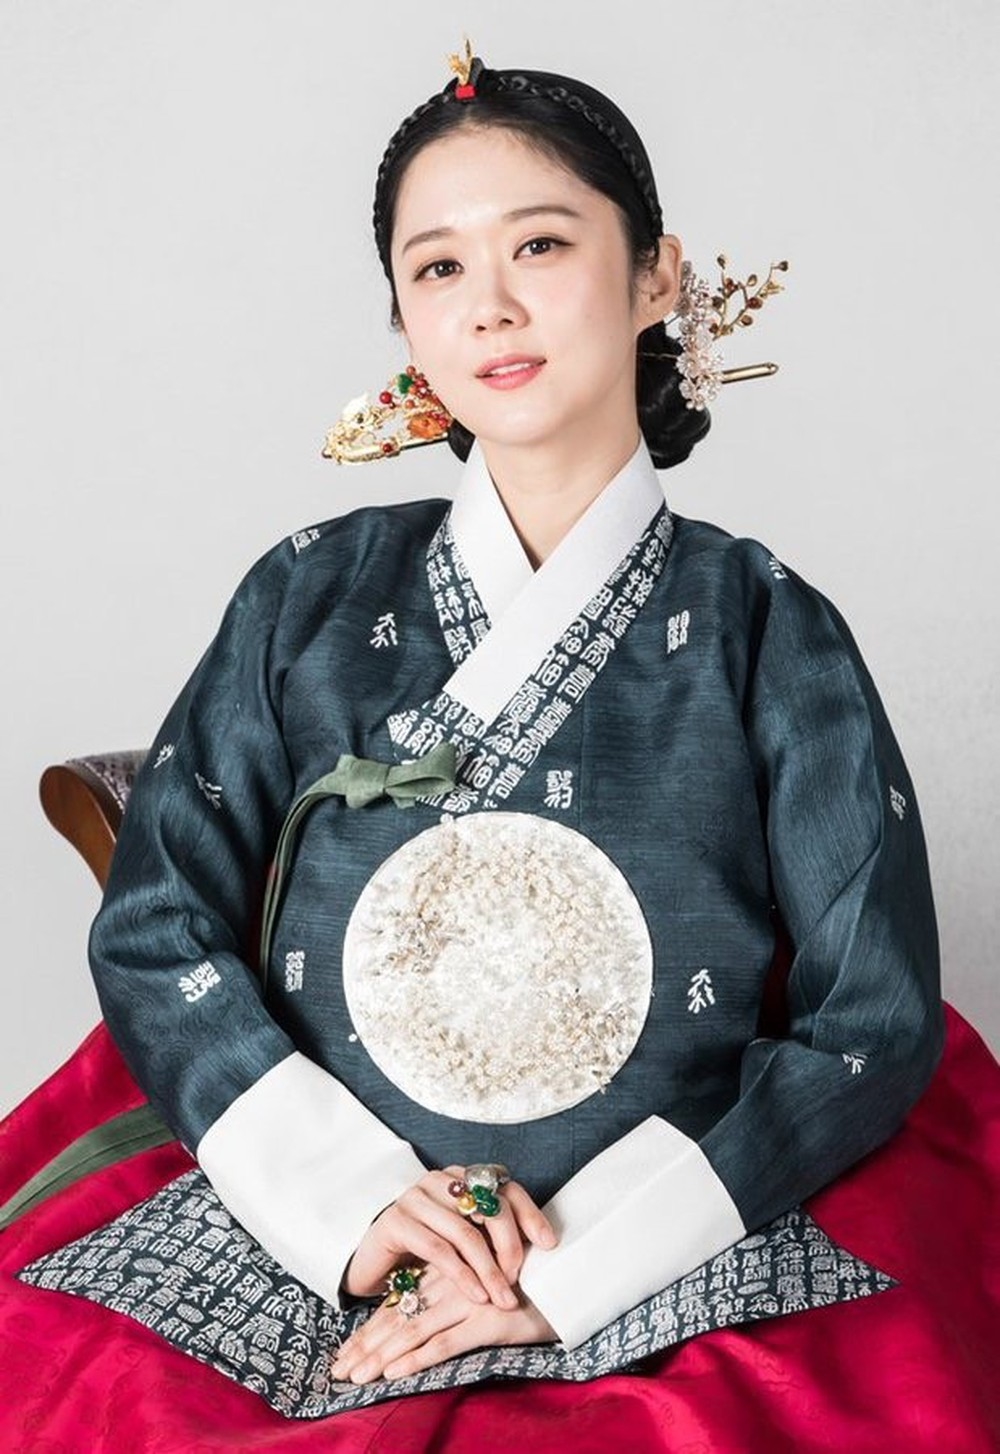  
Vai diễn gần nhất của cô là hoàng hậu Oh Sunny trong phim "cung đấu" Hàn The Last Empress.